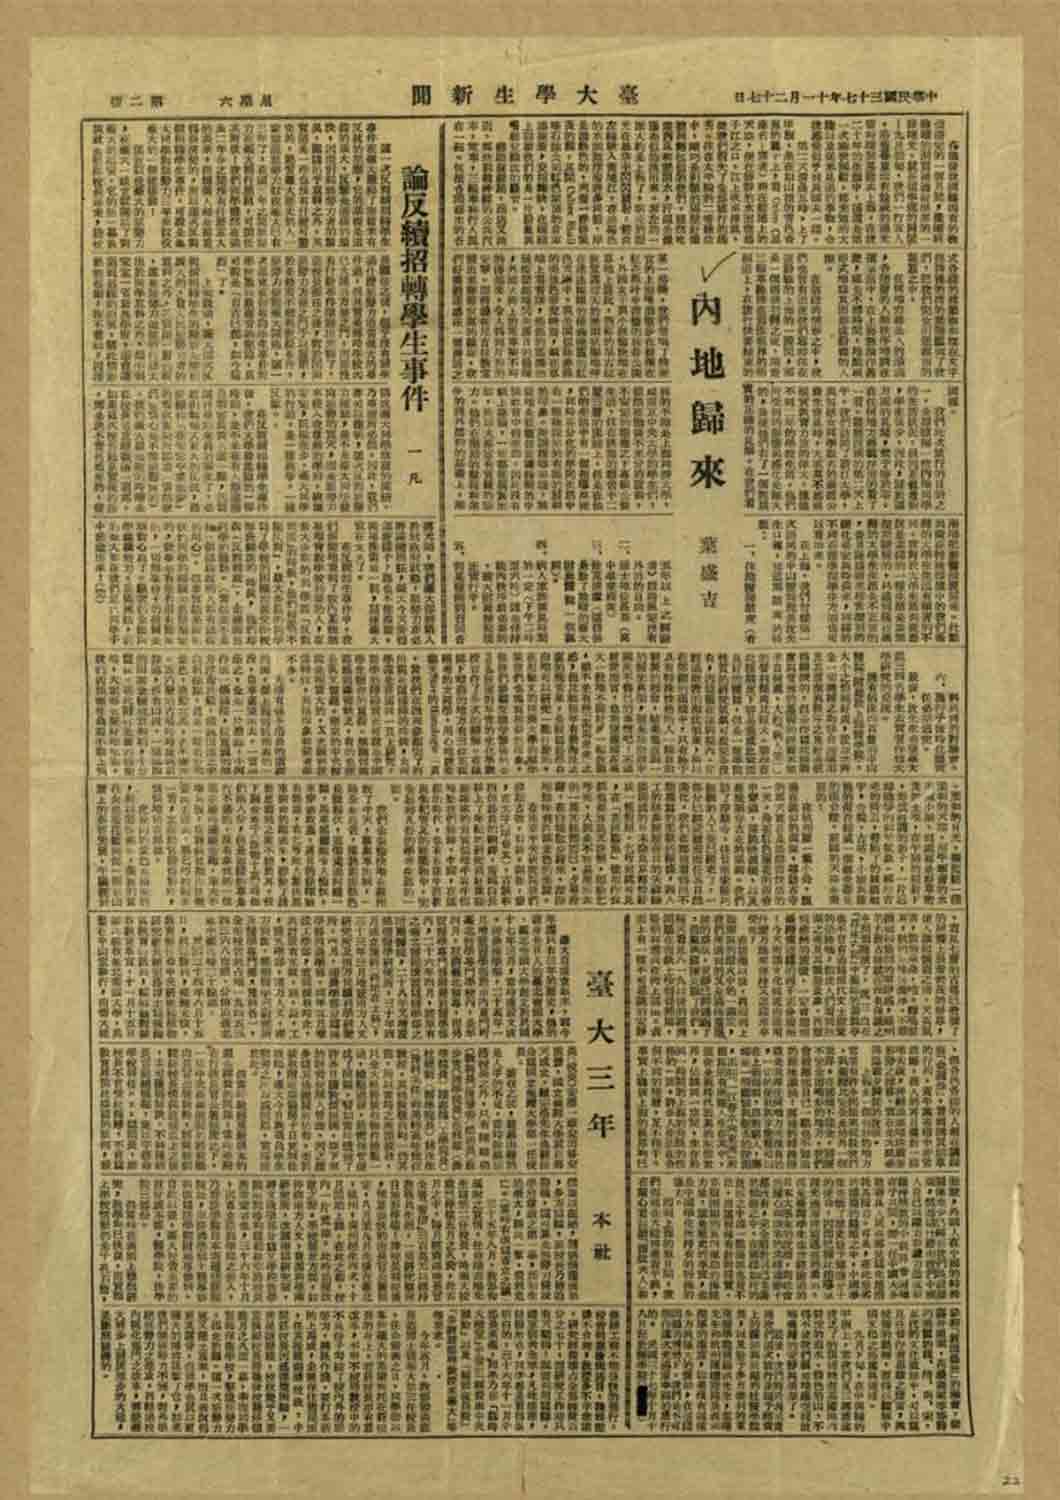 葉盛吉的〈內地歸來〉一文，刊登於1948年11月27日的《臺大學生新聞》第二版上。